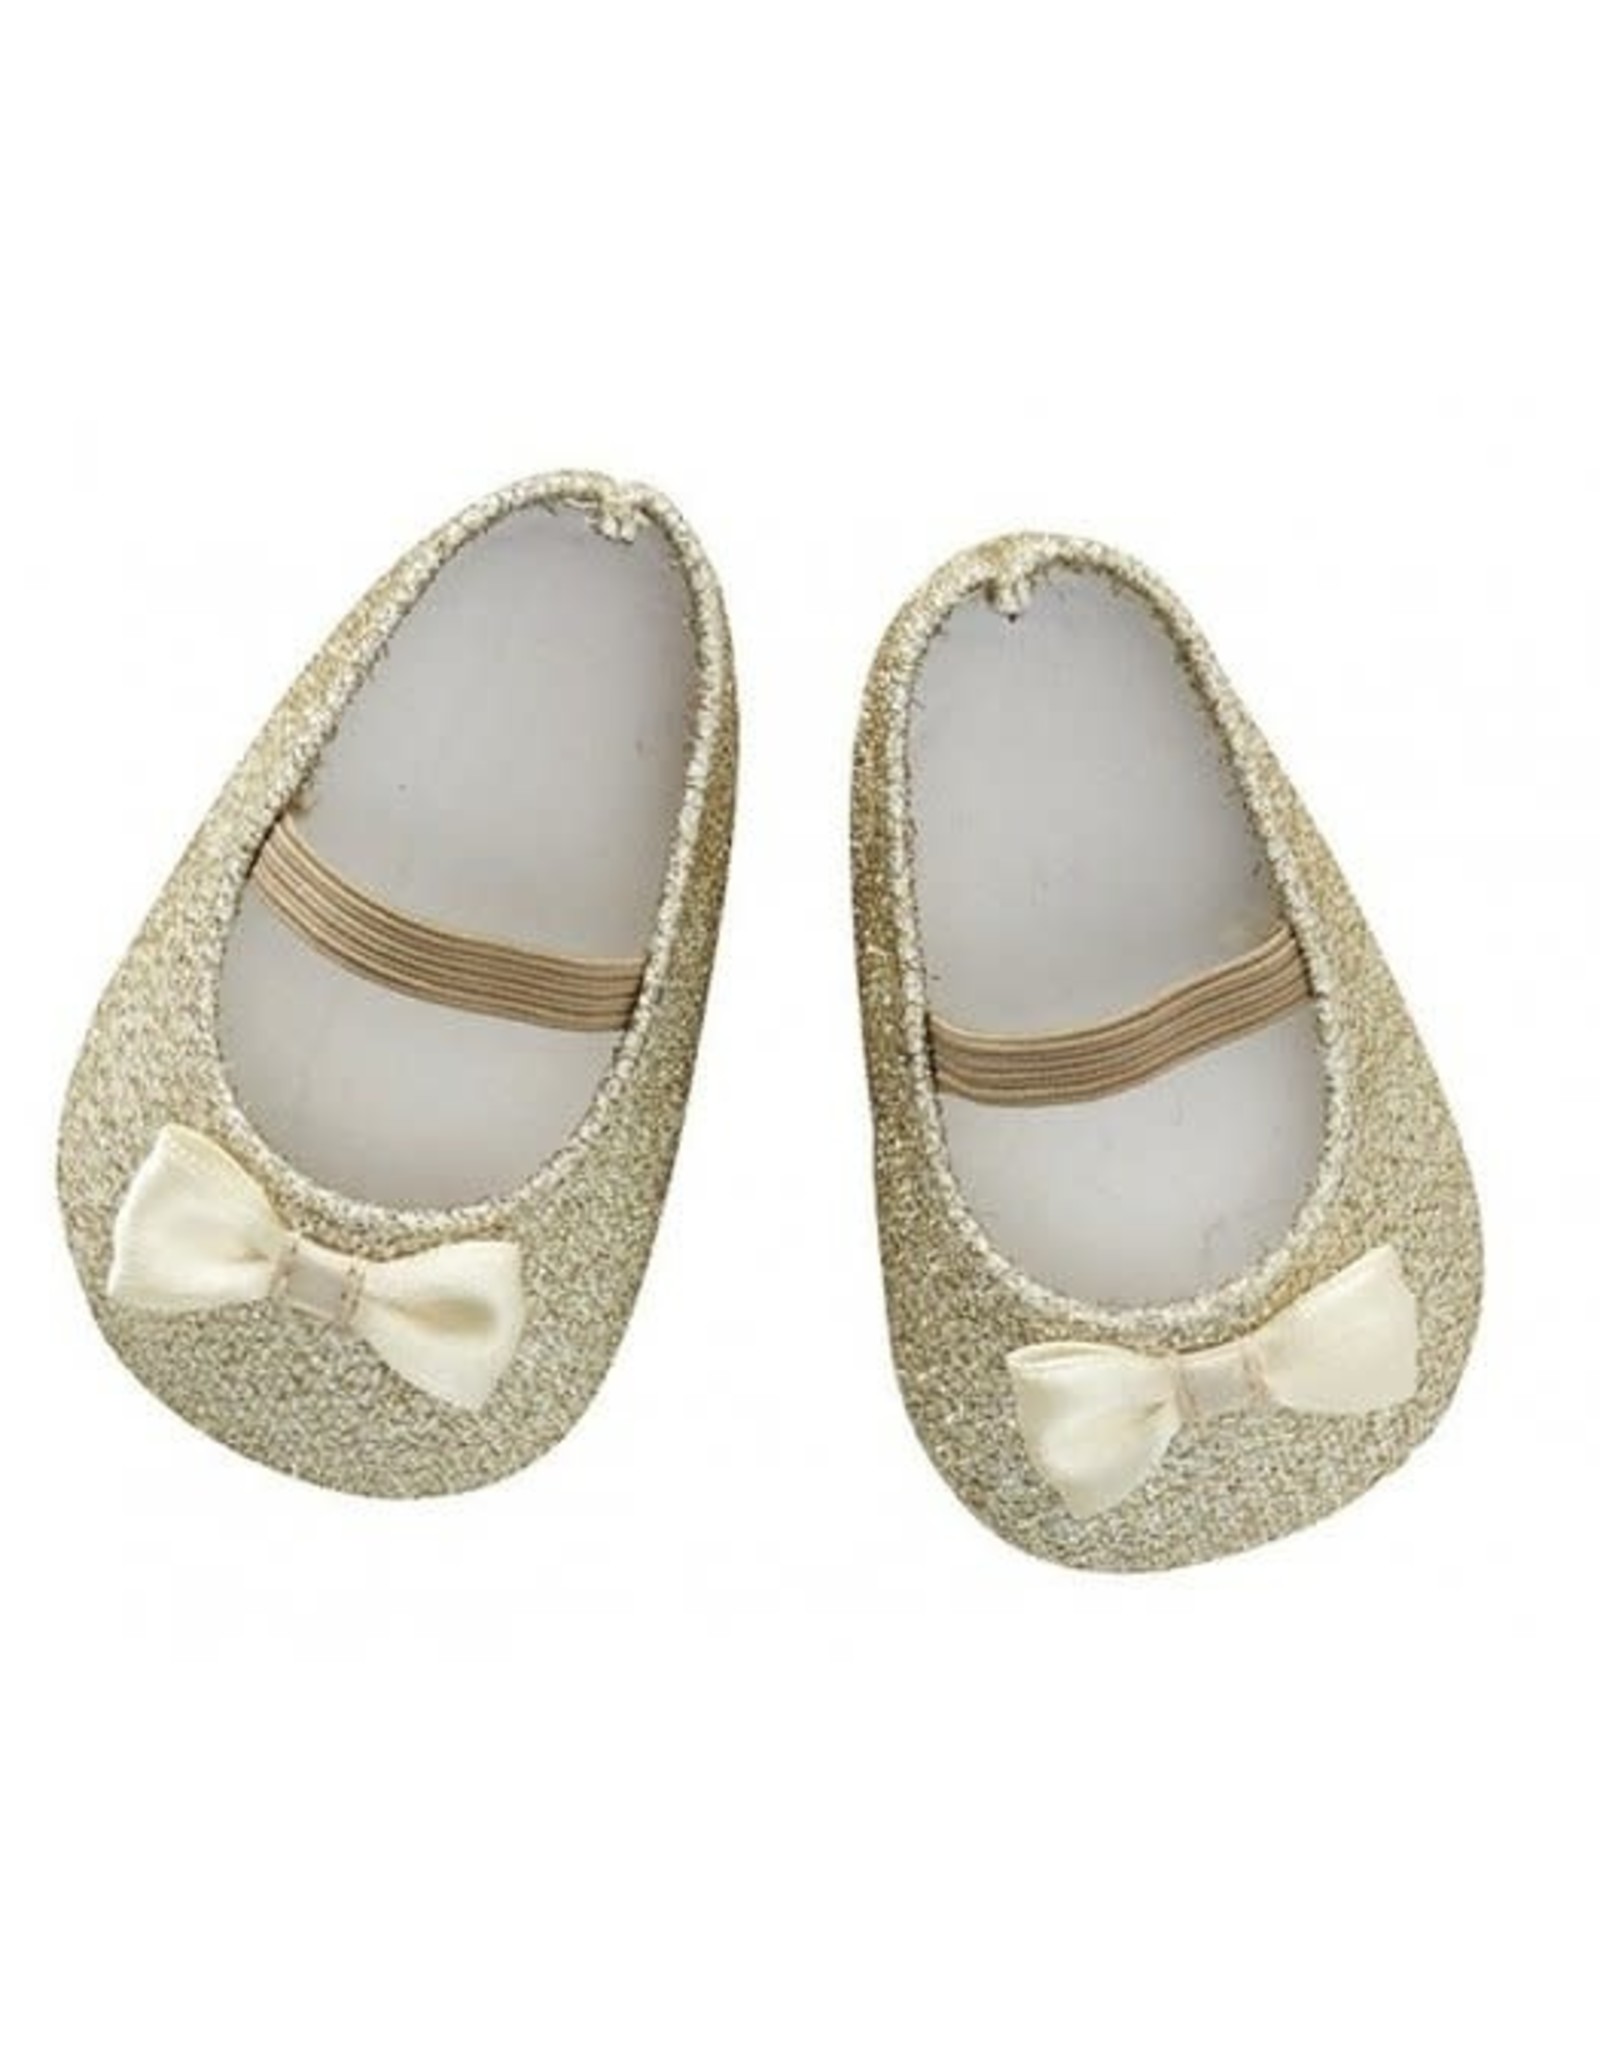 ByASTRUP Shoes Glitter Gold